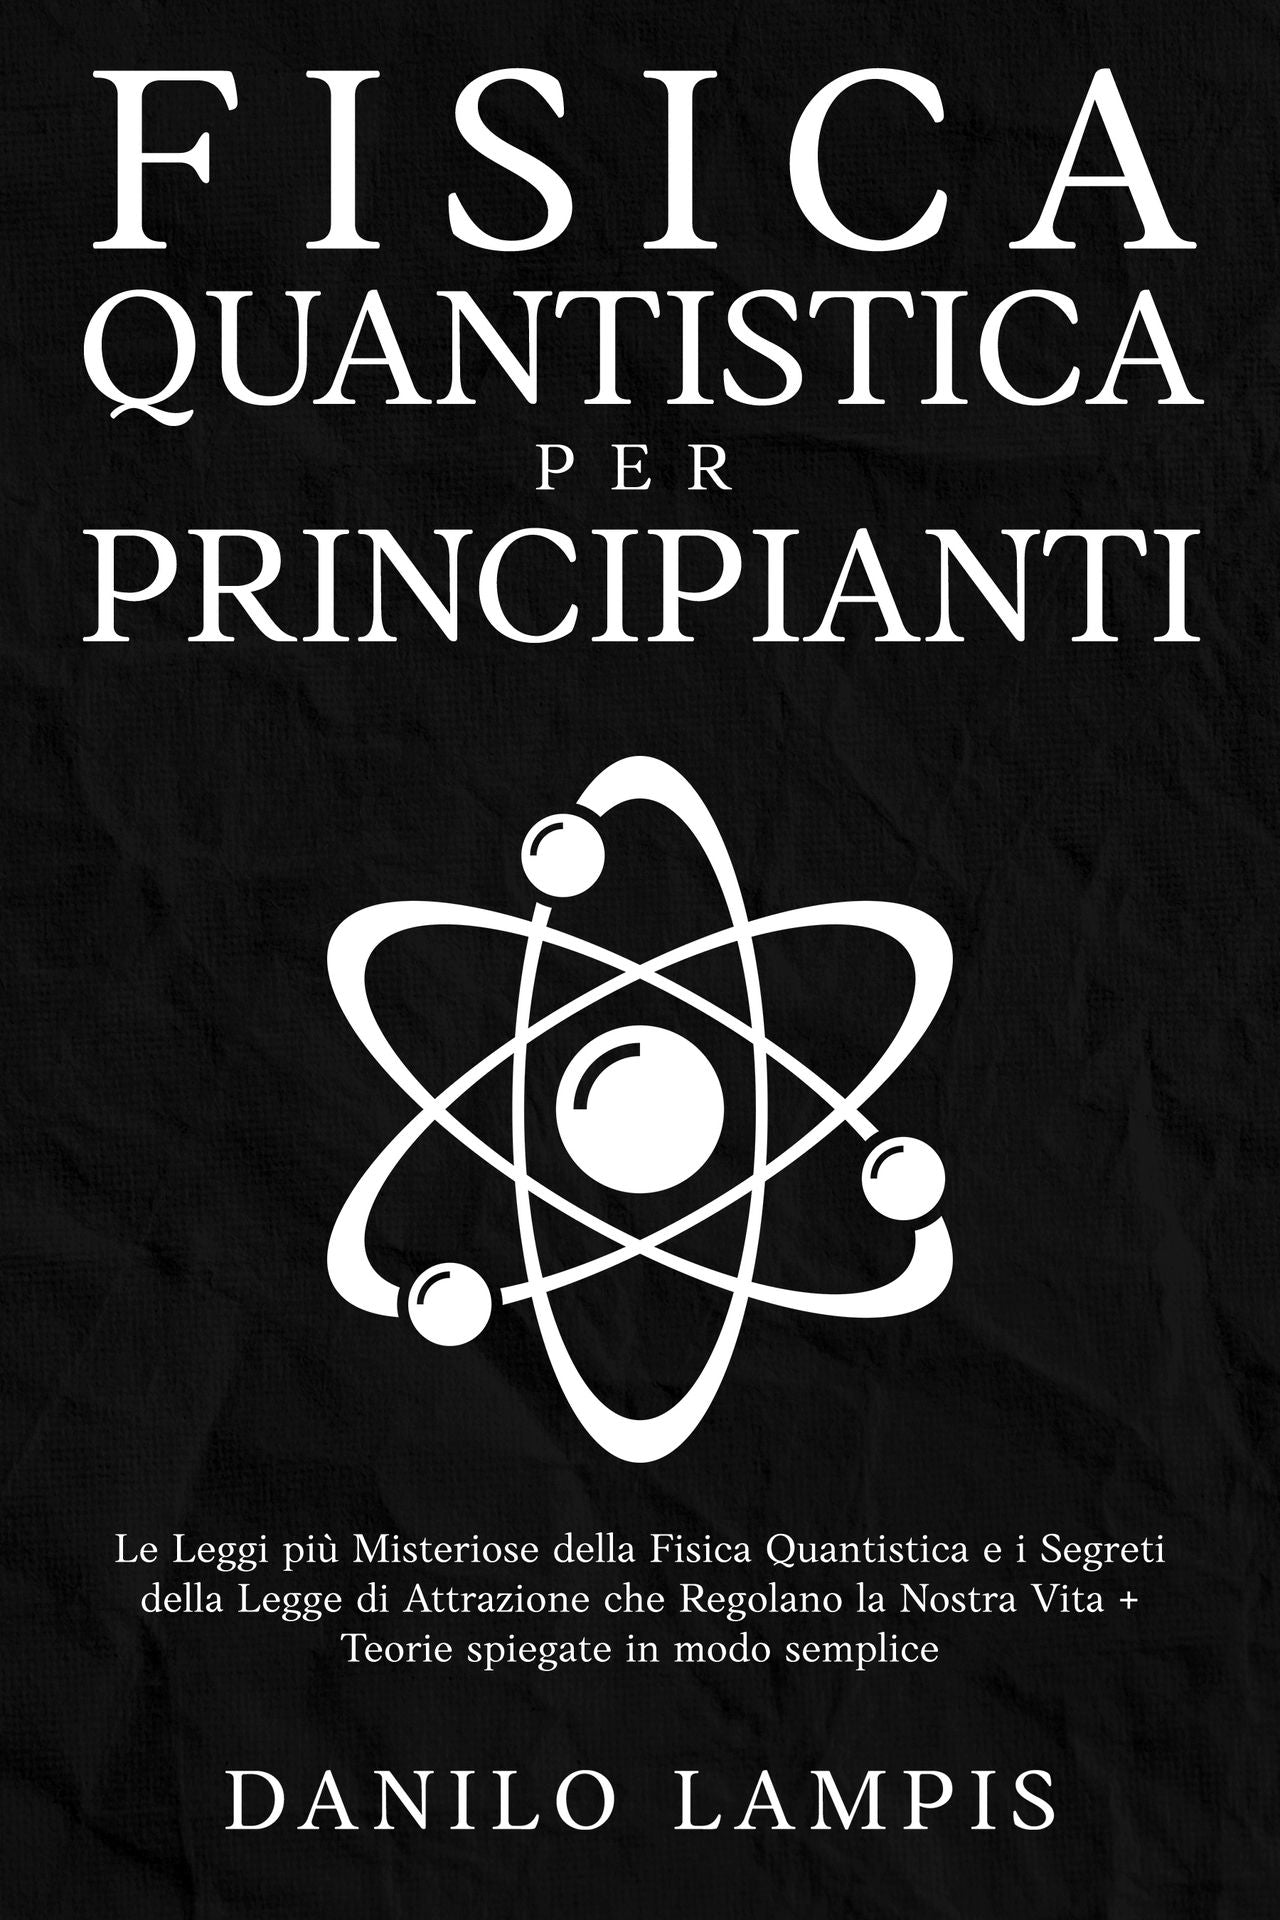 Fisica Quantistica per principianti - Di Danilo Lampis